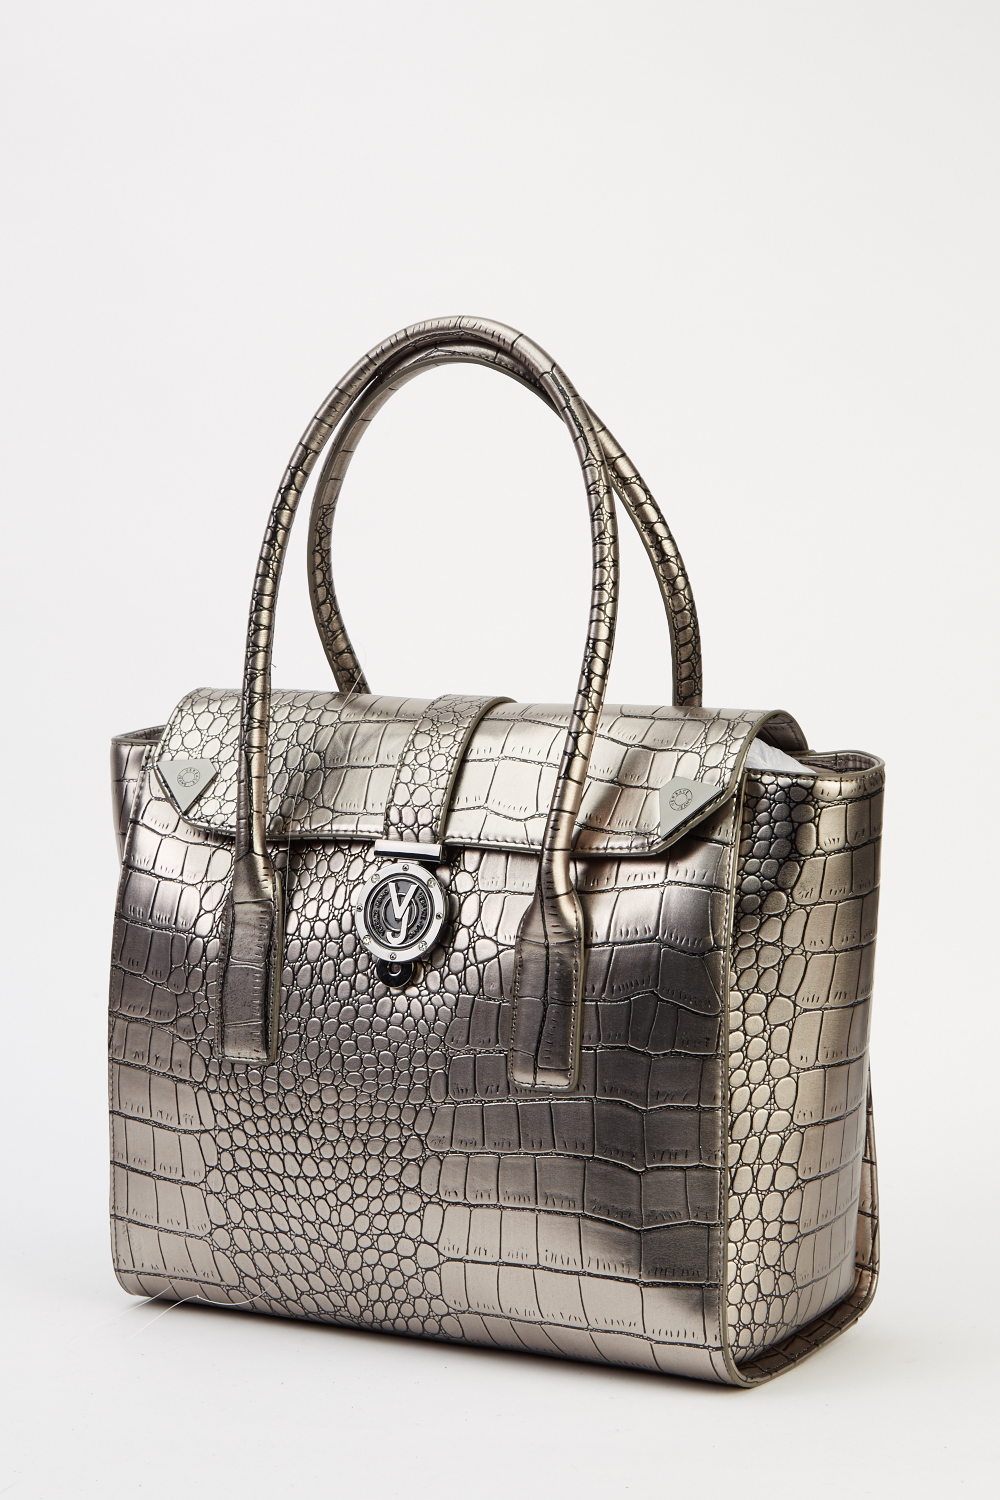 Versace Jeans Mock Croc Silver Handbag 